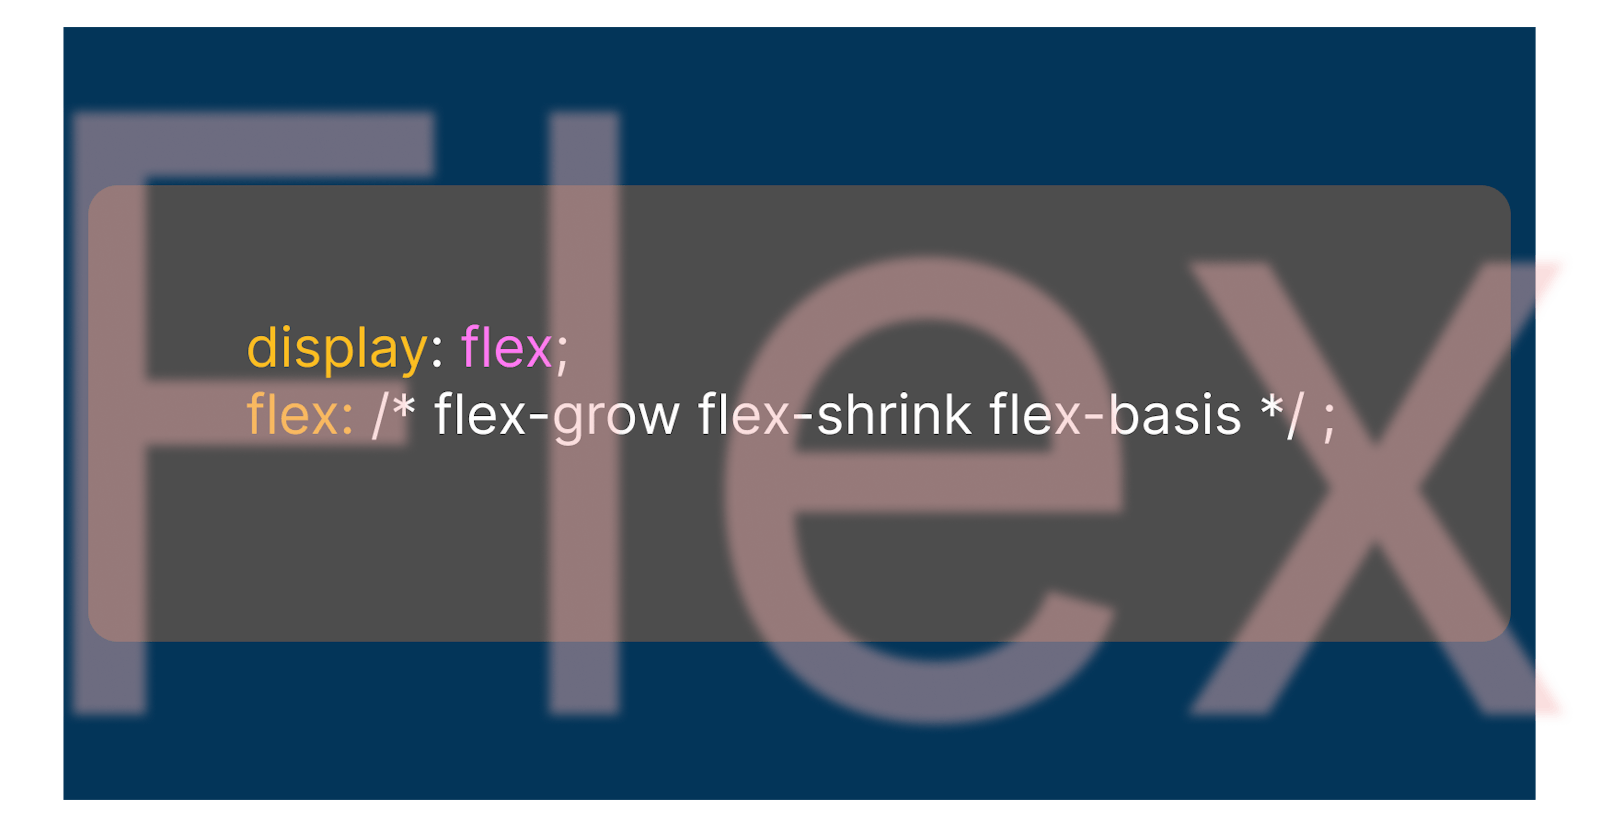 Flex: flex-grow flex-shrink flex-basis; Explained